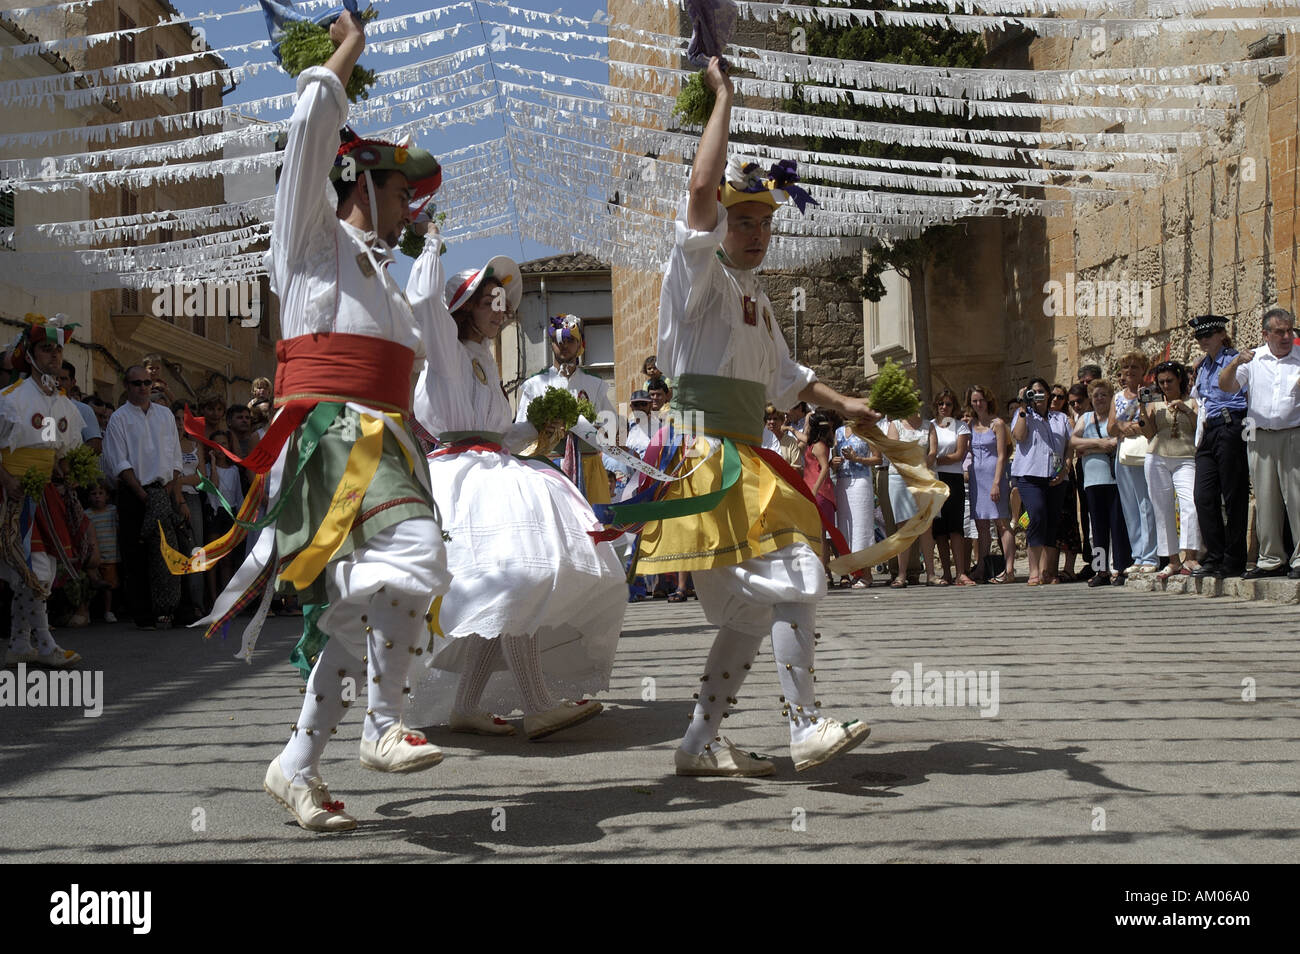 Dance of the Cossiers in Algaida, Mallorca. Stock Photo